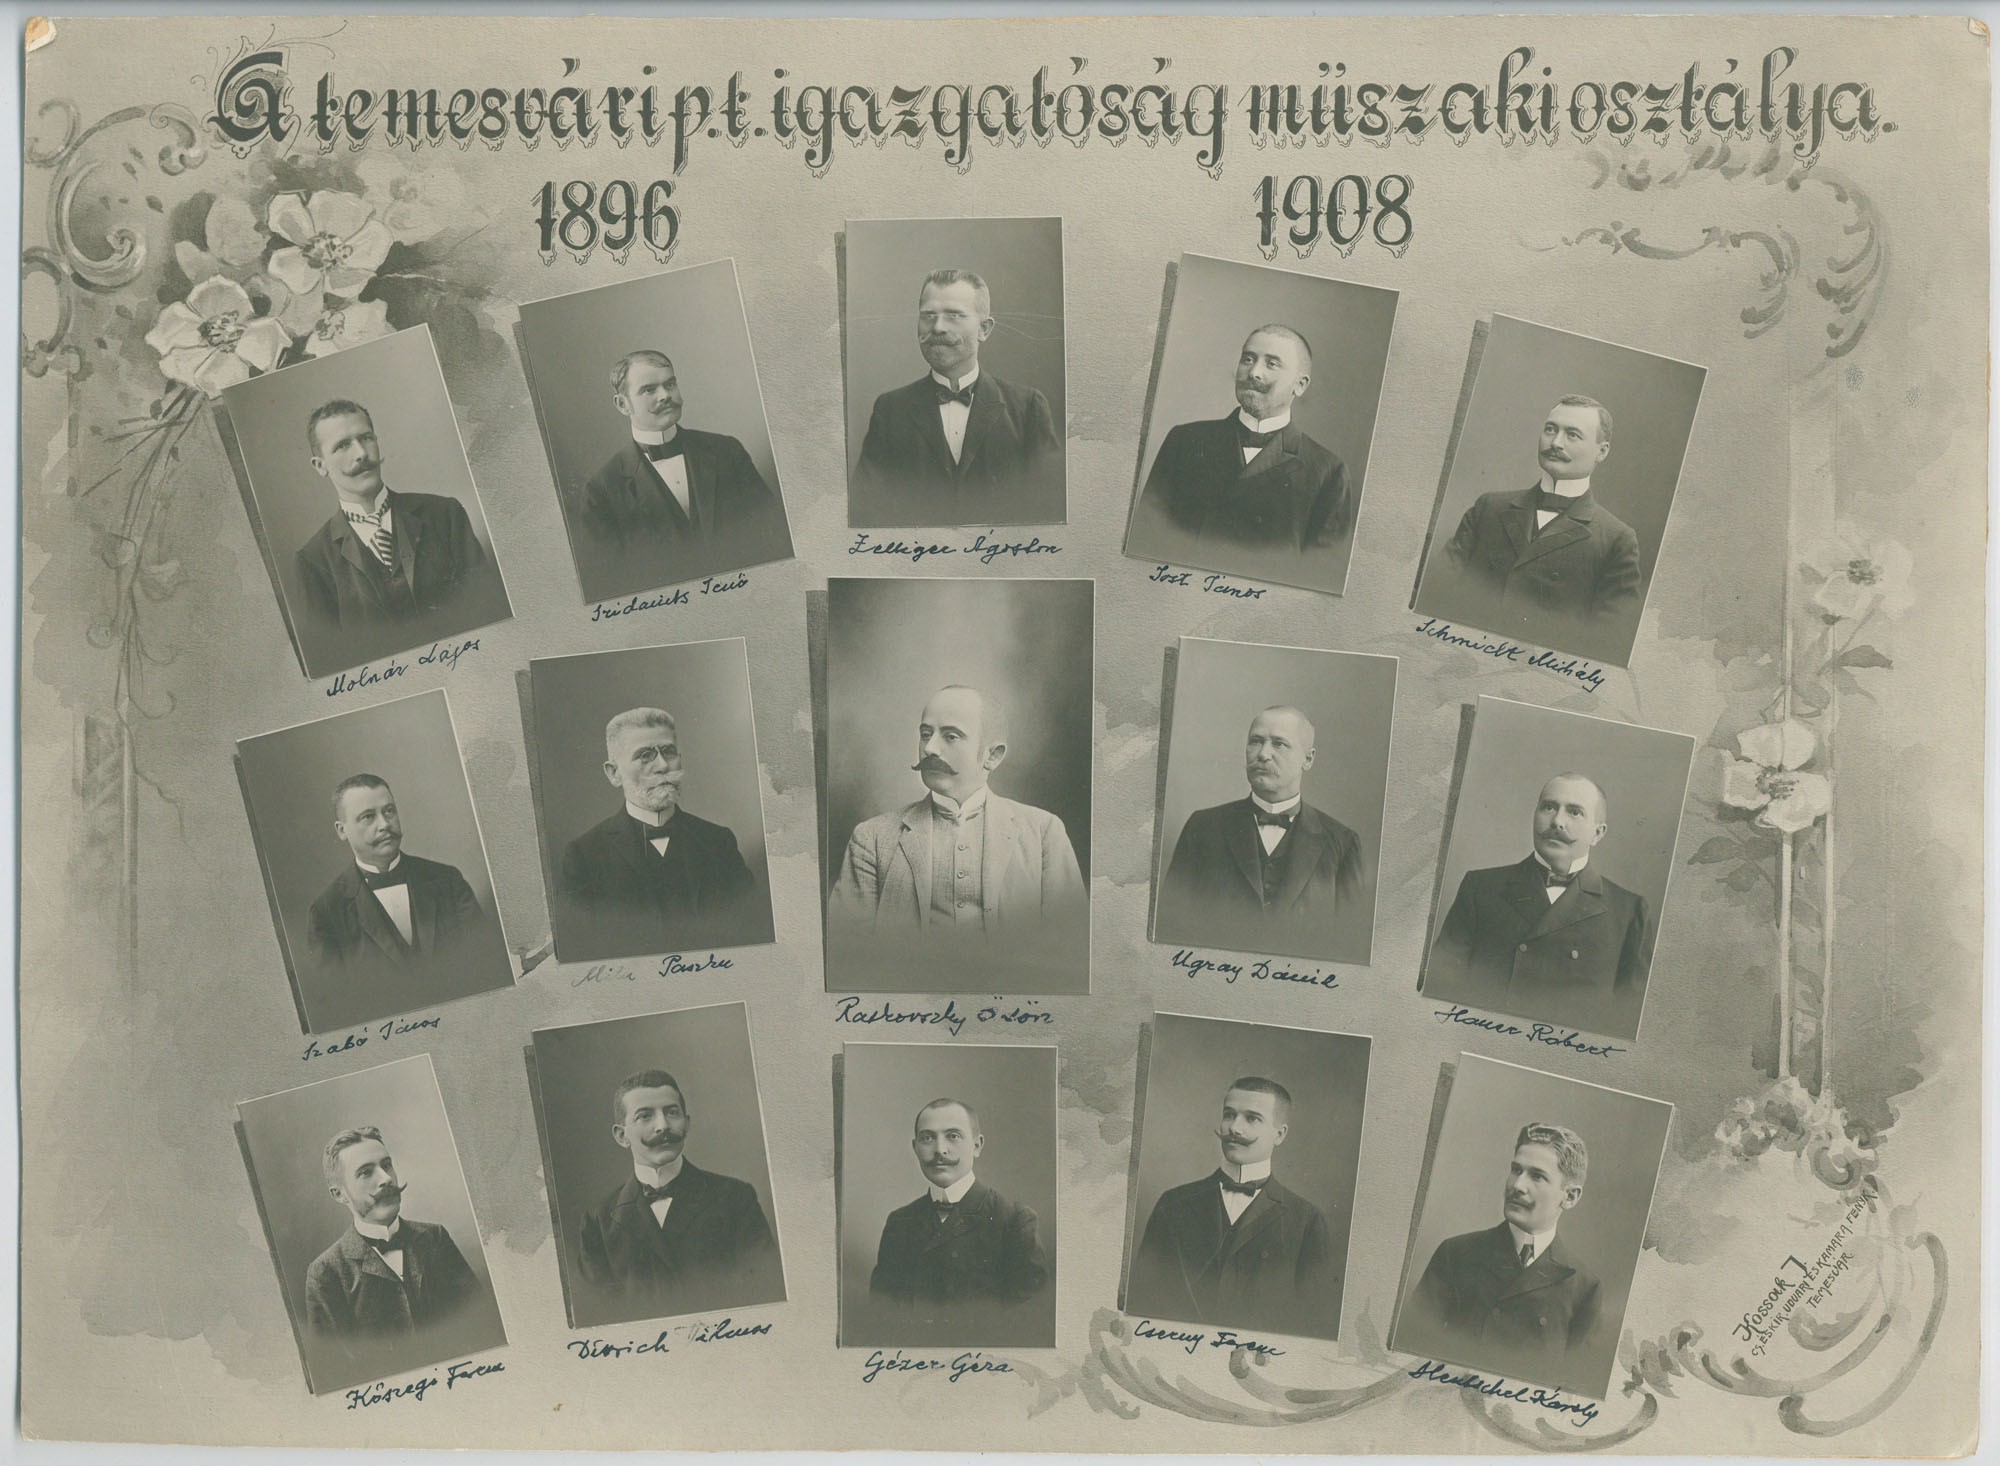 A temesvári postaigazgatóság műszaki osztálya, 1896-1908, tablókép (Postamúzeum CC BY-NC-SA)